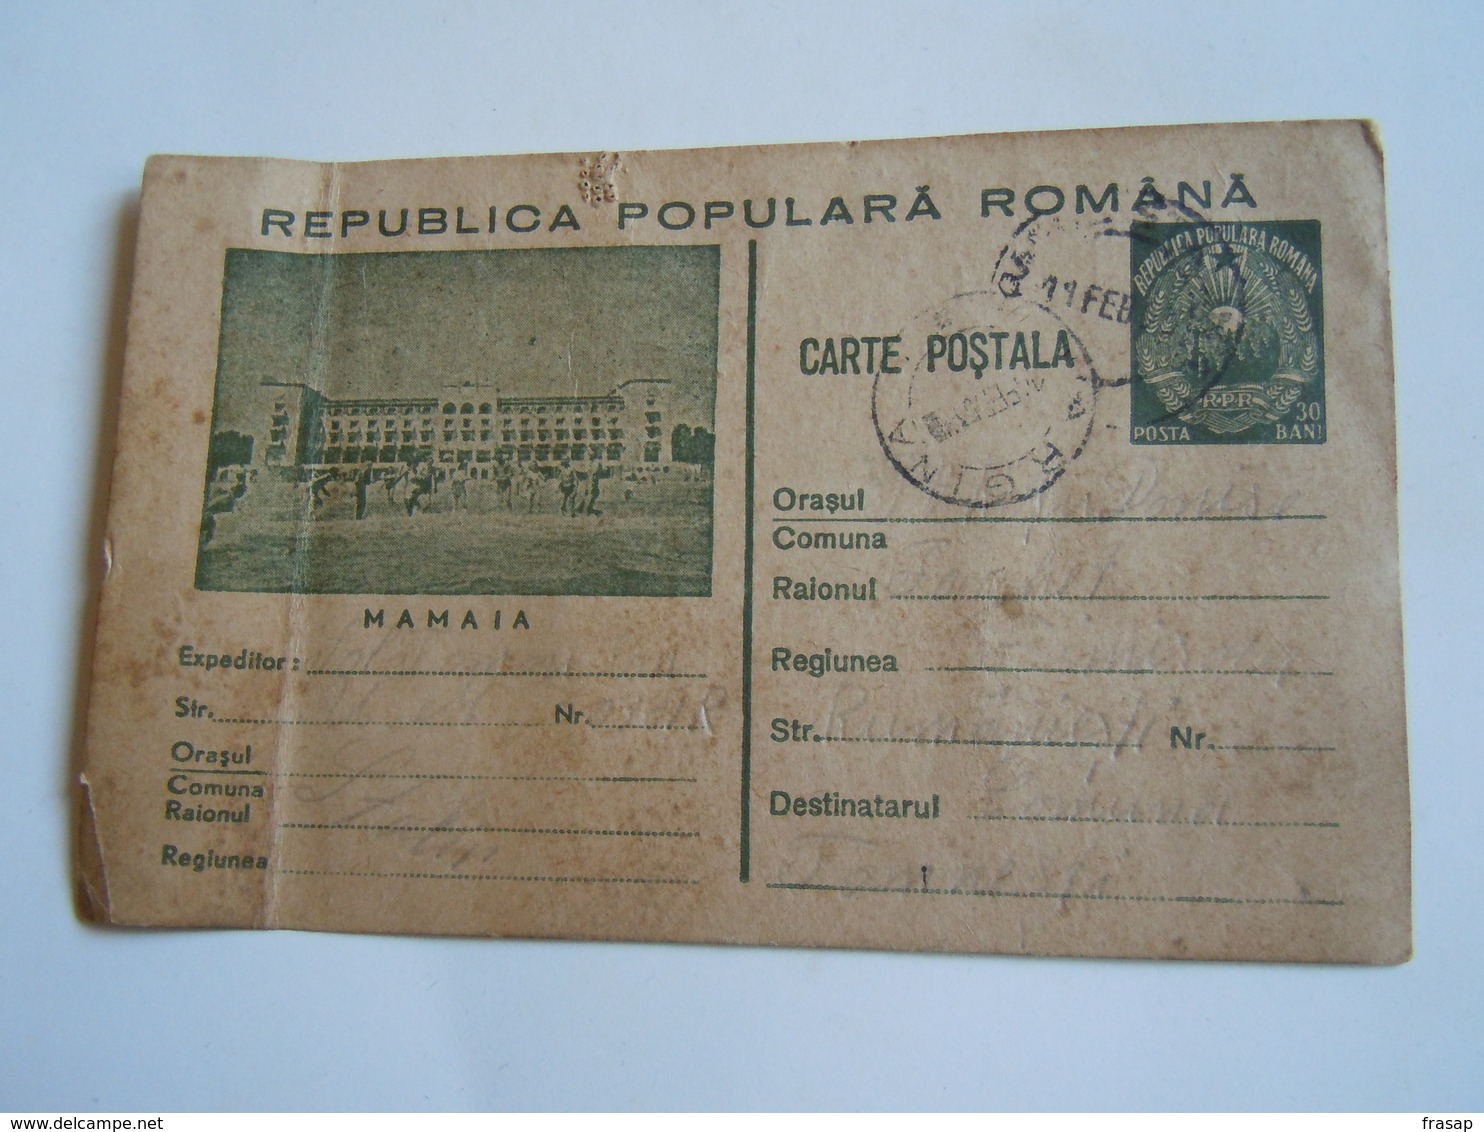 ROMANIA CARTA POSTALA 30 BANI - MAMAIA - Marcophilie